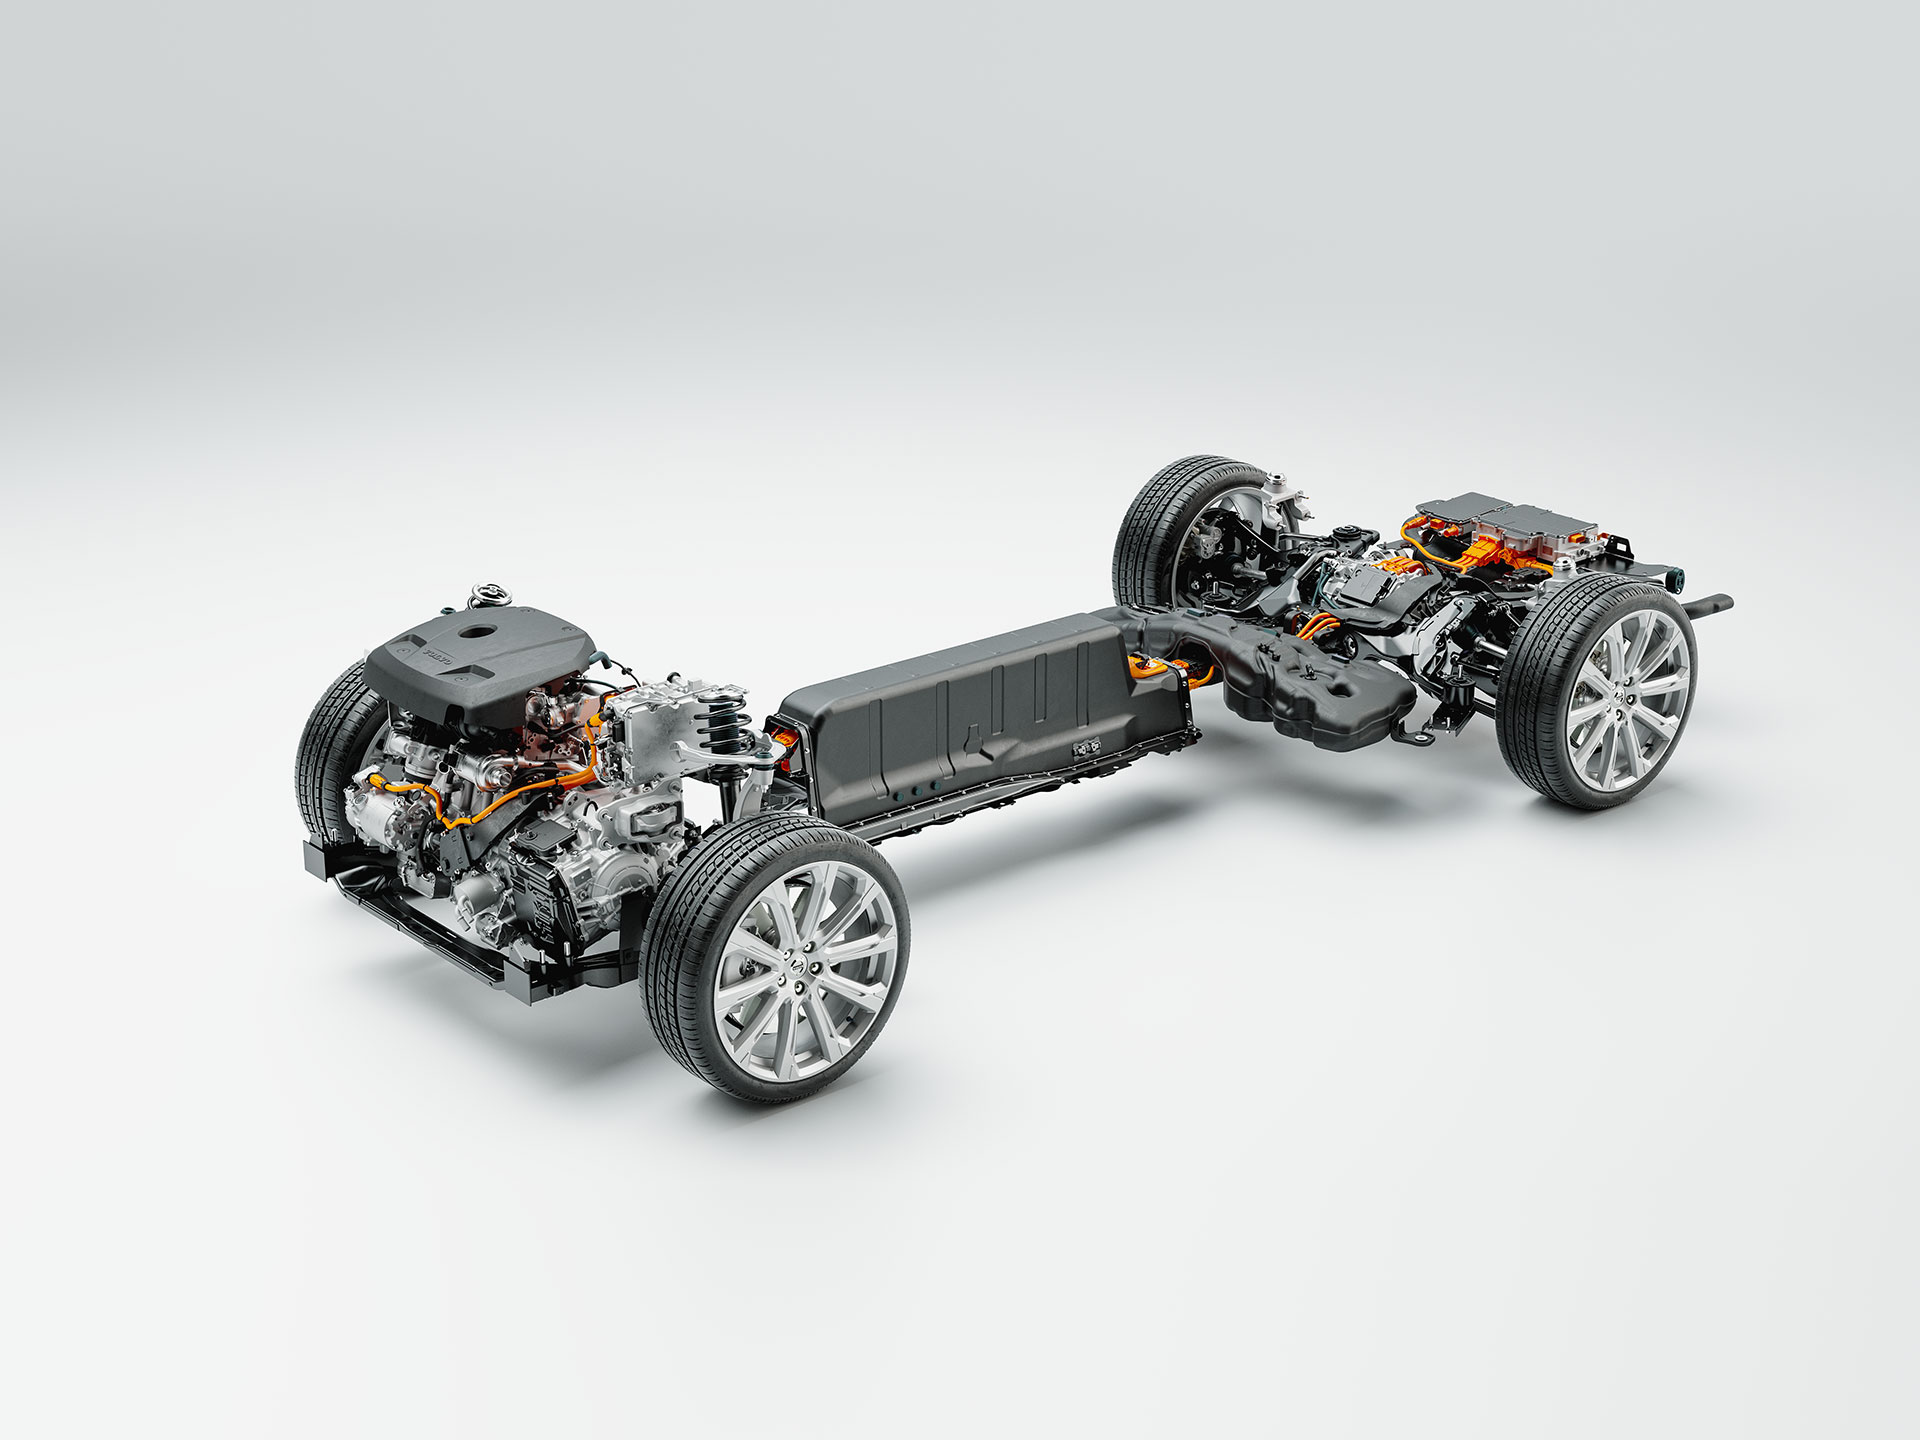 Slika sa tehničkim detaljima šasije, baterije i pogonskog sklopa Volvo plug-in hibrida.